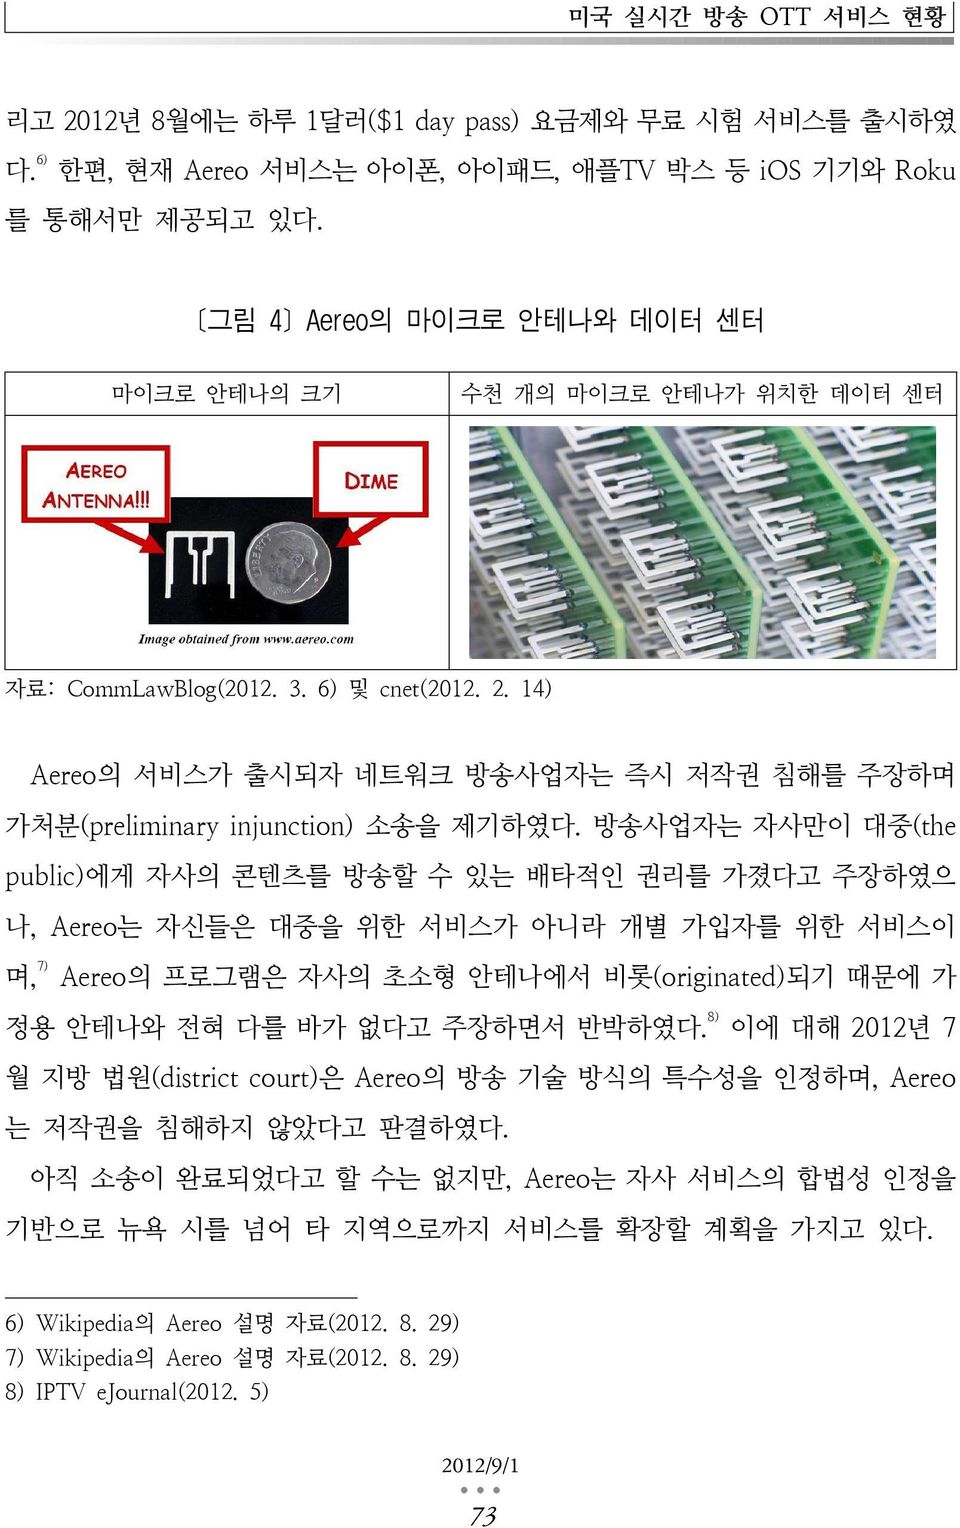 14) Aereo의 서비스가 출시되자 네트워크 방송사업자는 즉시 저작권 침해를 주장하며 가처분(preliminary injunction) 소송을 제기하였다.